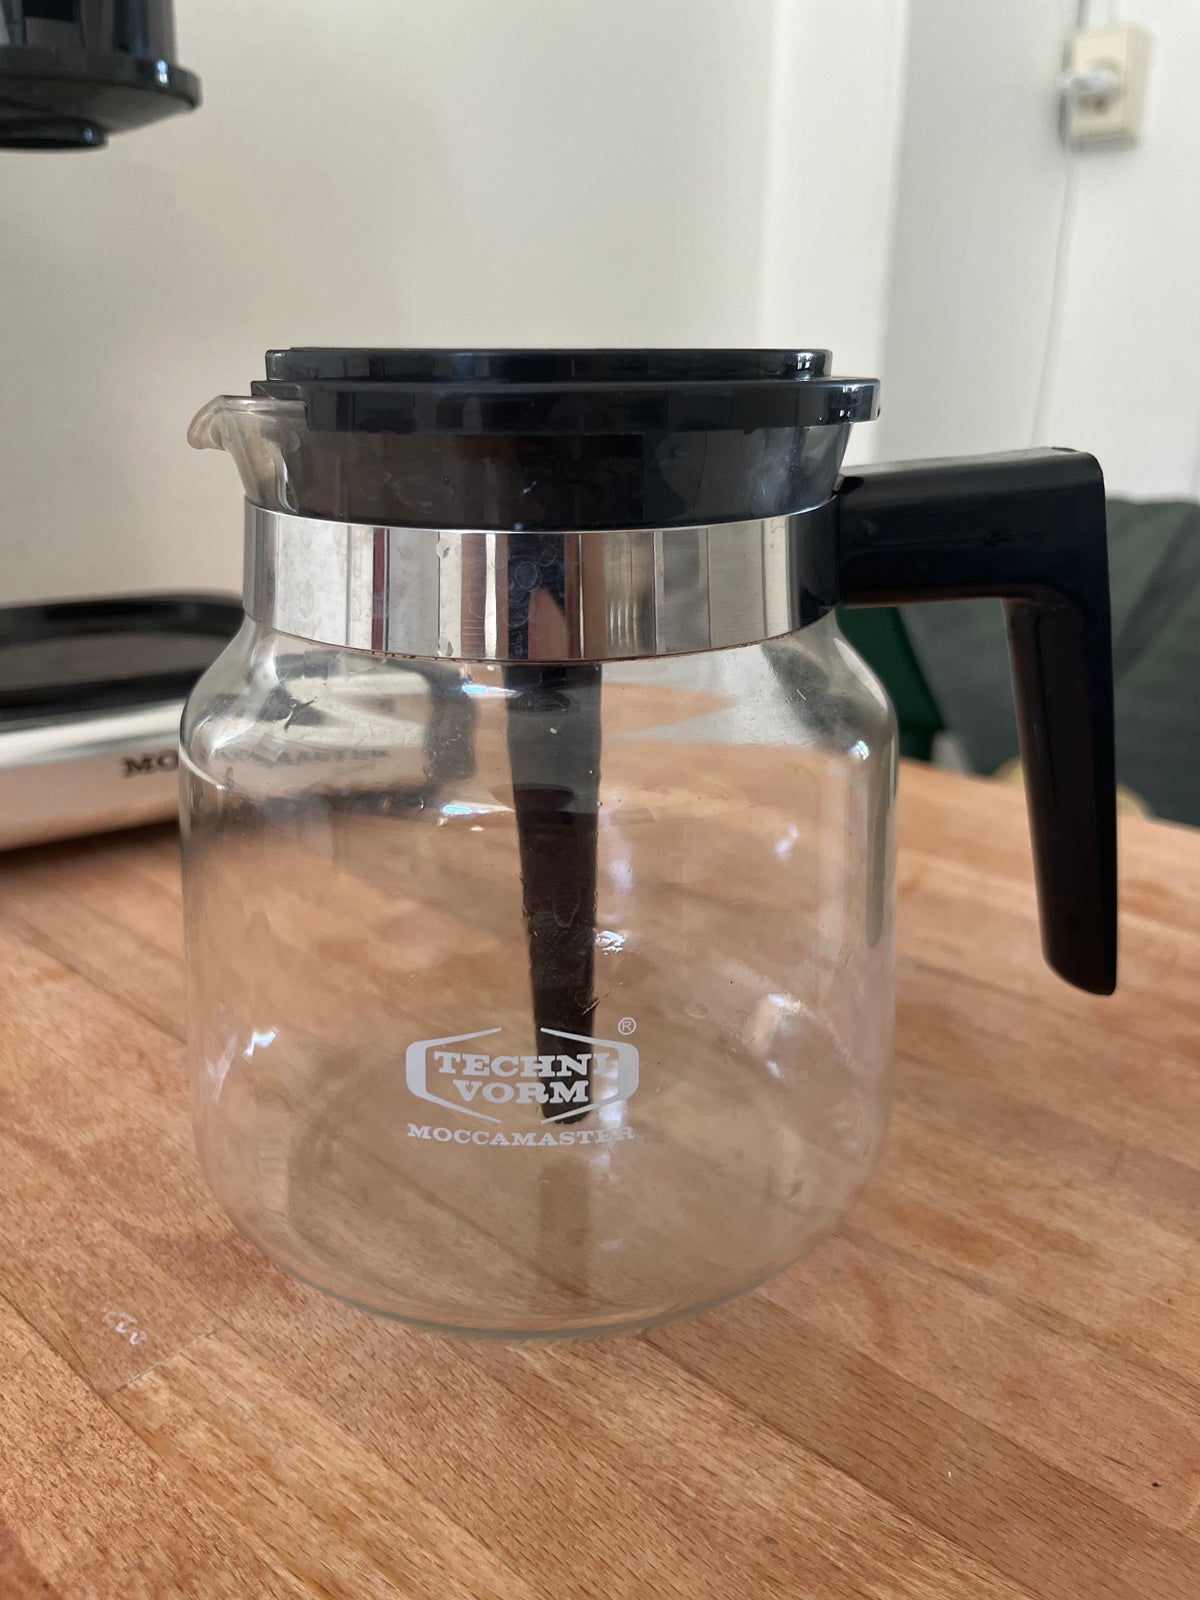 Moccamaster kaffemaskine, Moccamaster